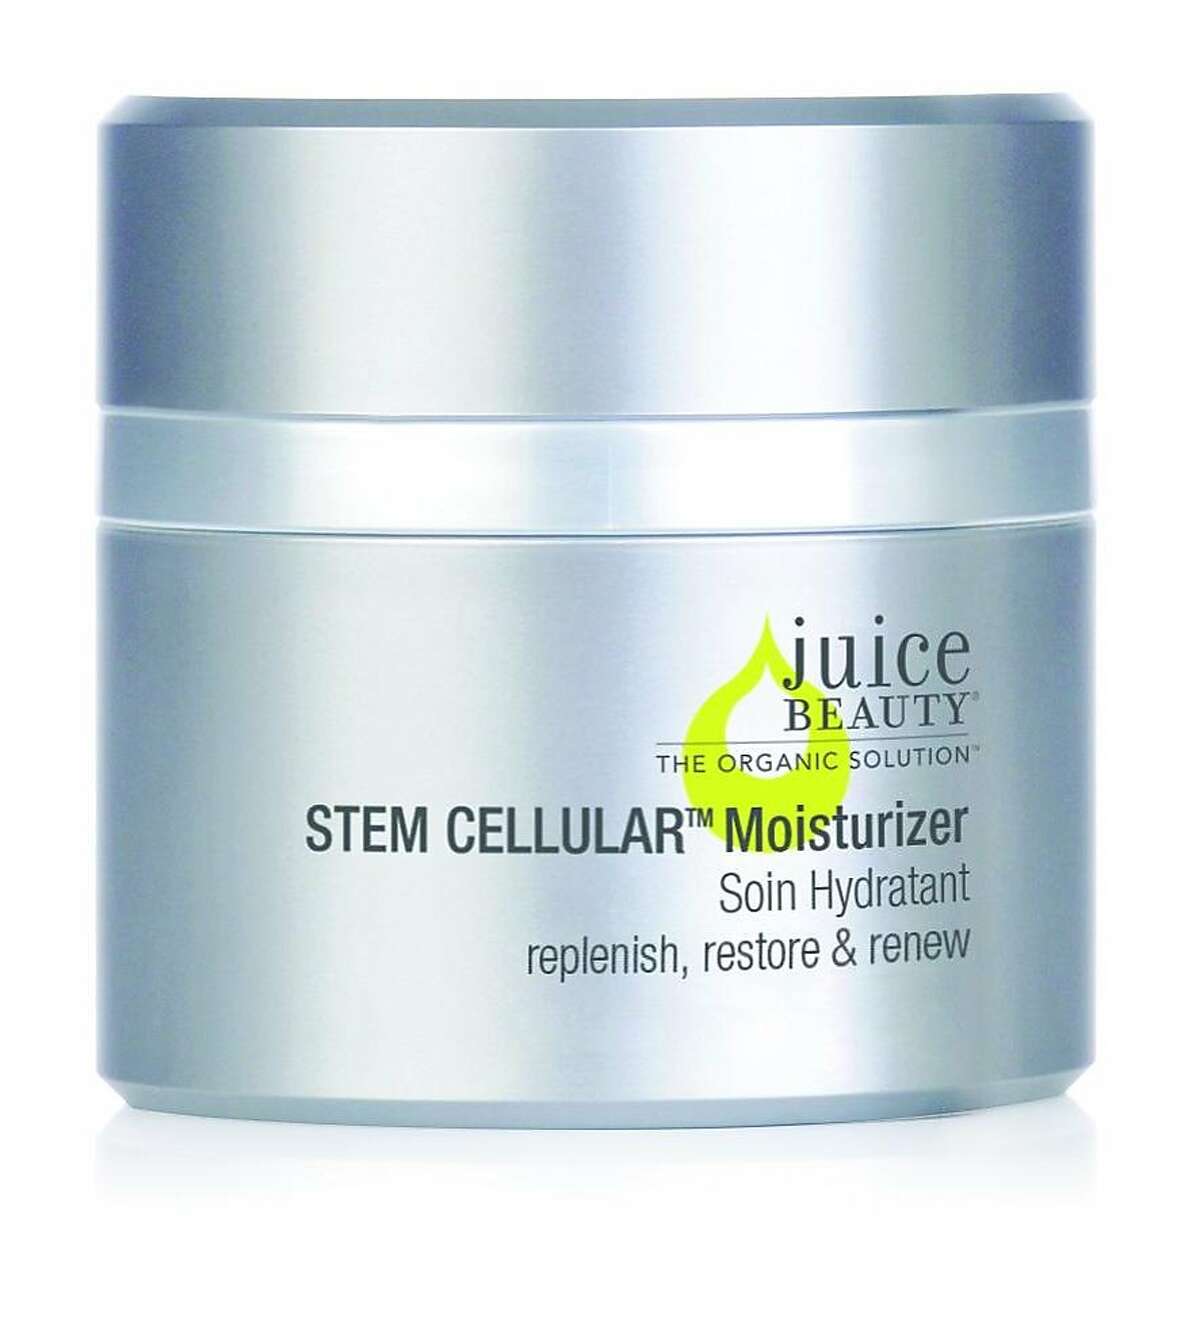 Juice Beauty's Stem Cellular Moisturizer.